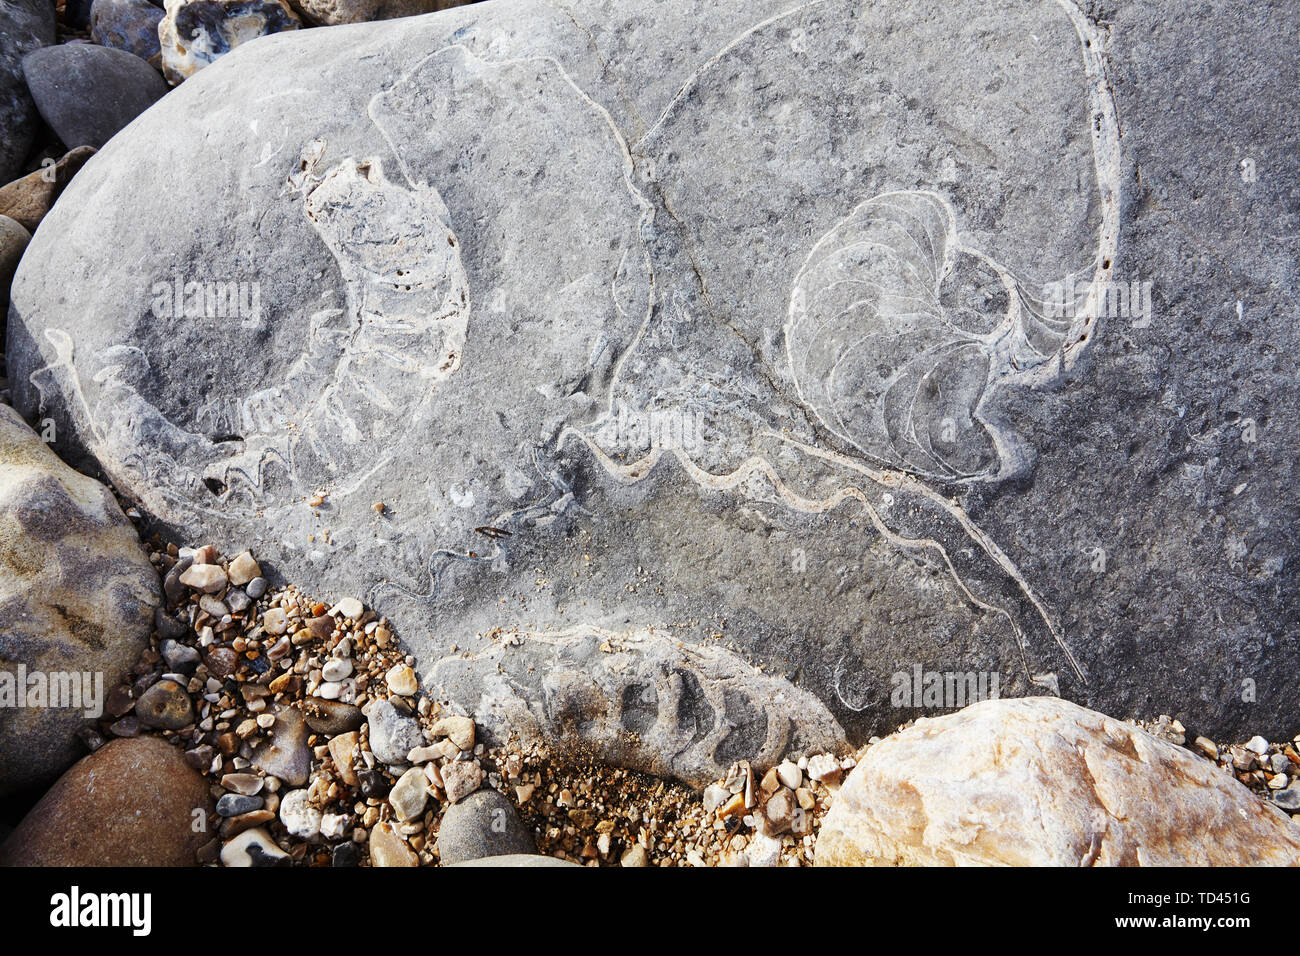 Deux fossiles d'ammonium et un fossile de Nautilus dans les rochers de Monmouth Beach, Lyme Regis, Jurassic Coast, site classé au patrimoine mondial de l'UNESCO, Dorset, Angleterre Banque D'Images